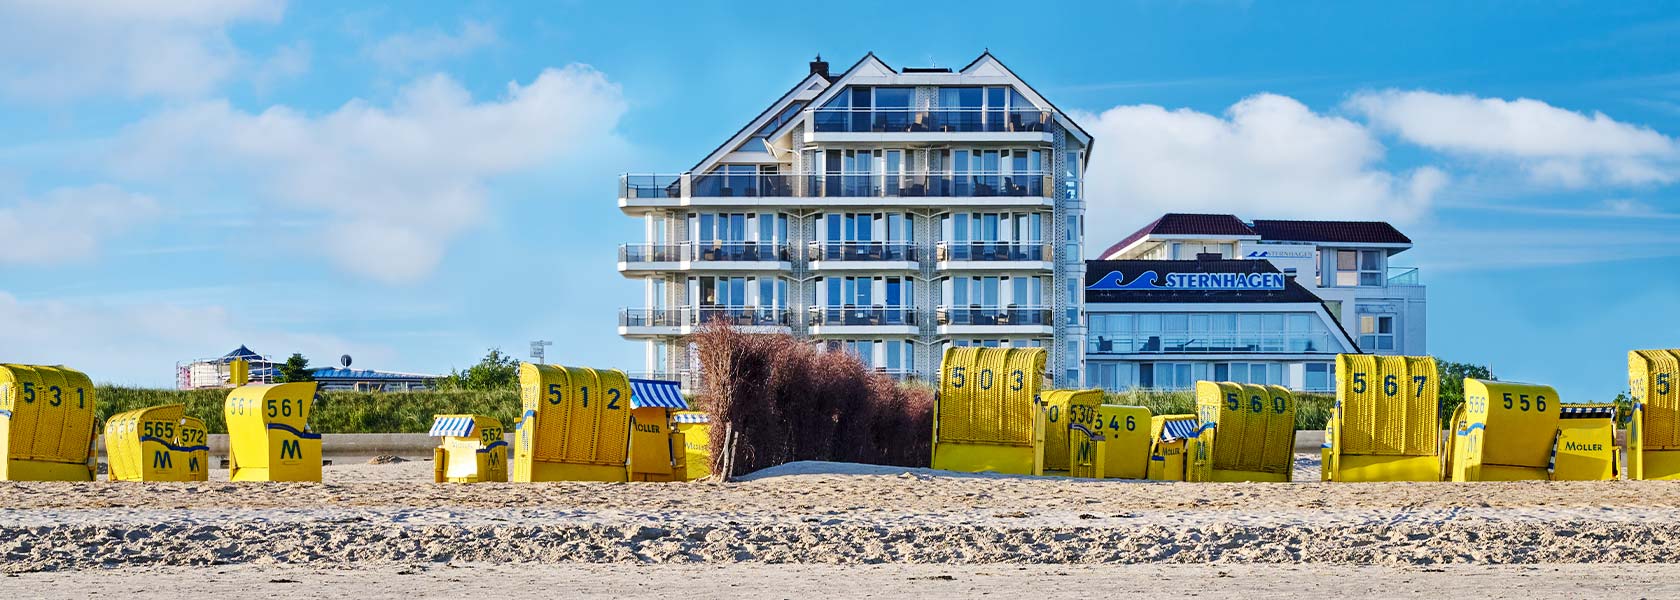 Badhotel Sternhagen, das 5-Sterne-Hotel Cuxhaven Duhnen